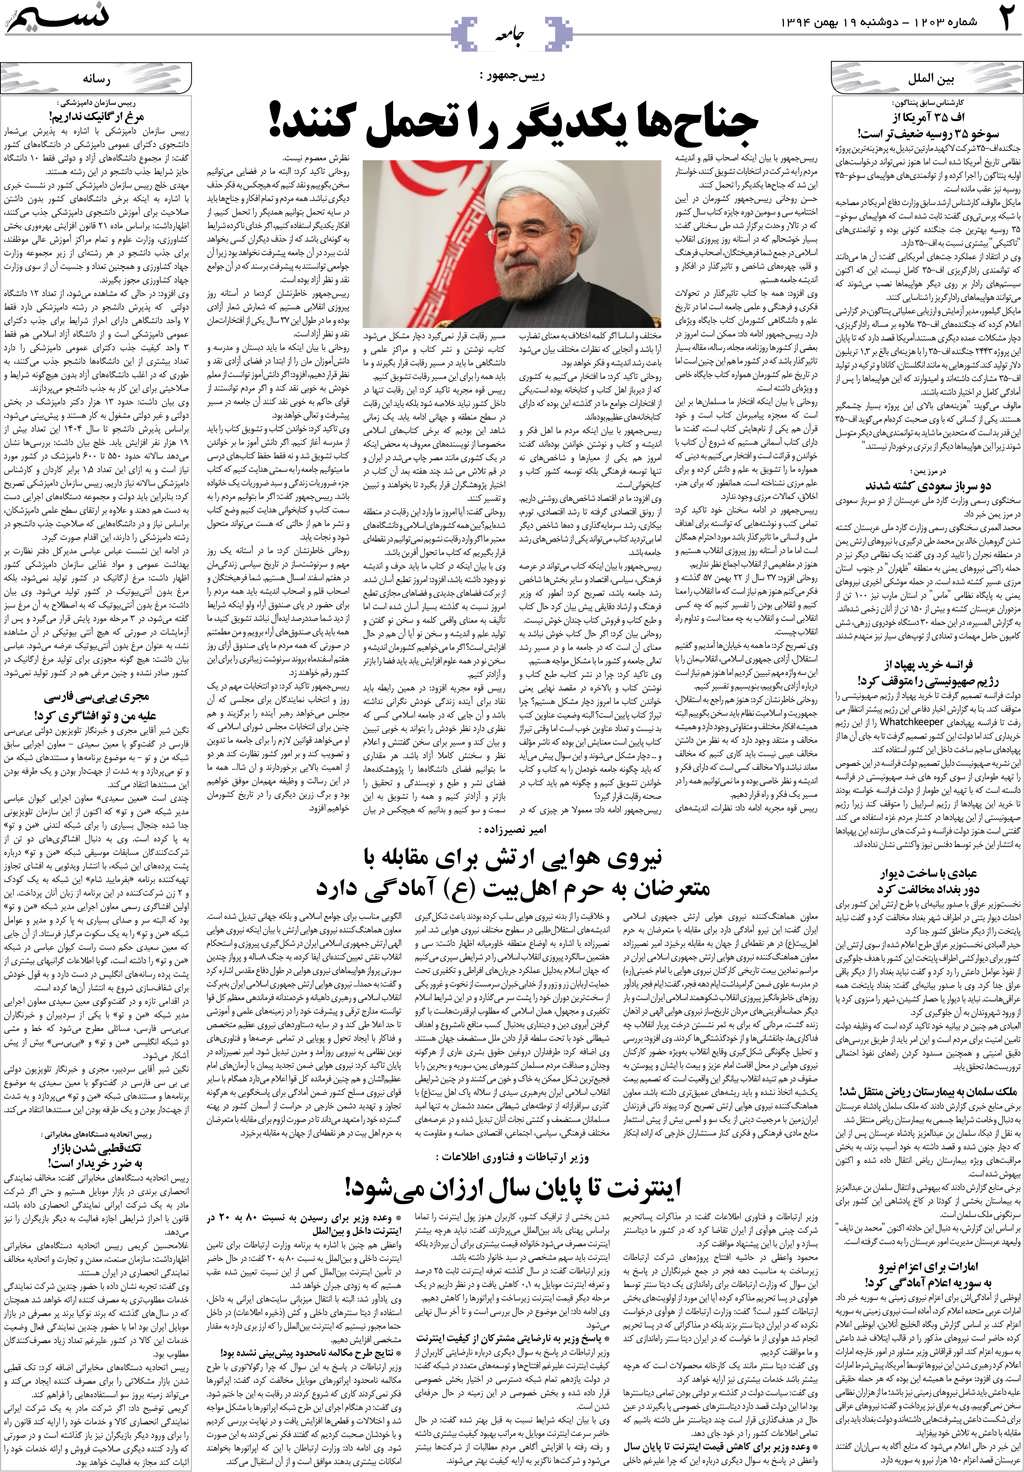 صفحه جامعه روزنامه نسیم شماره 1203